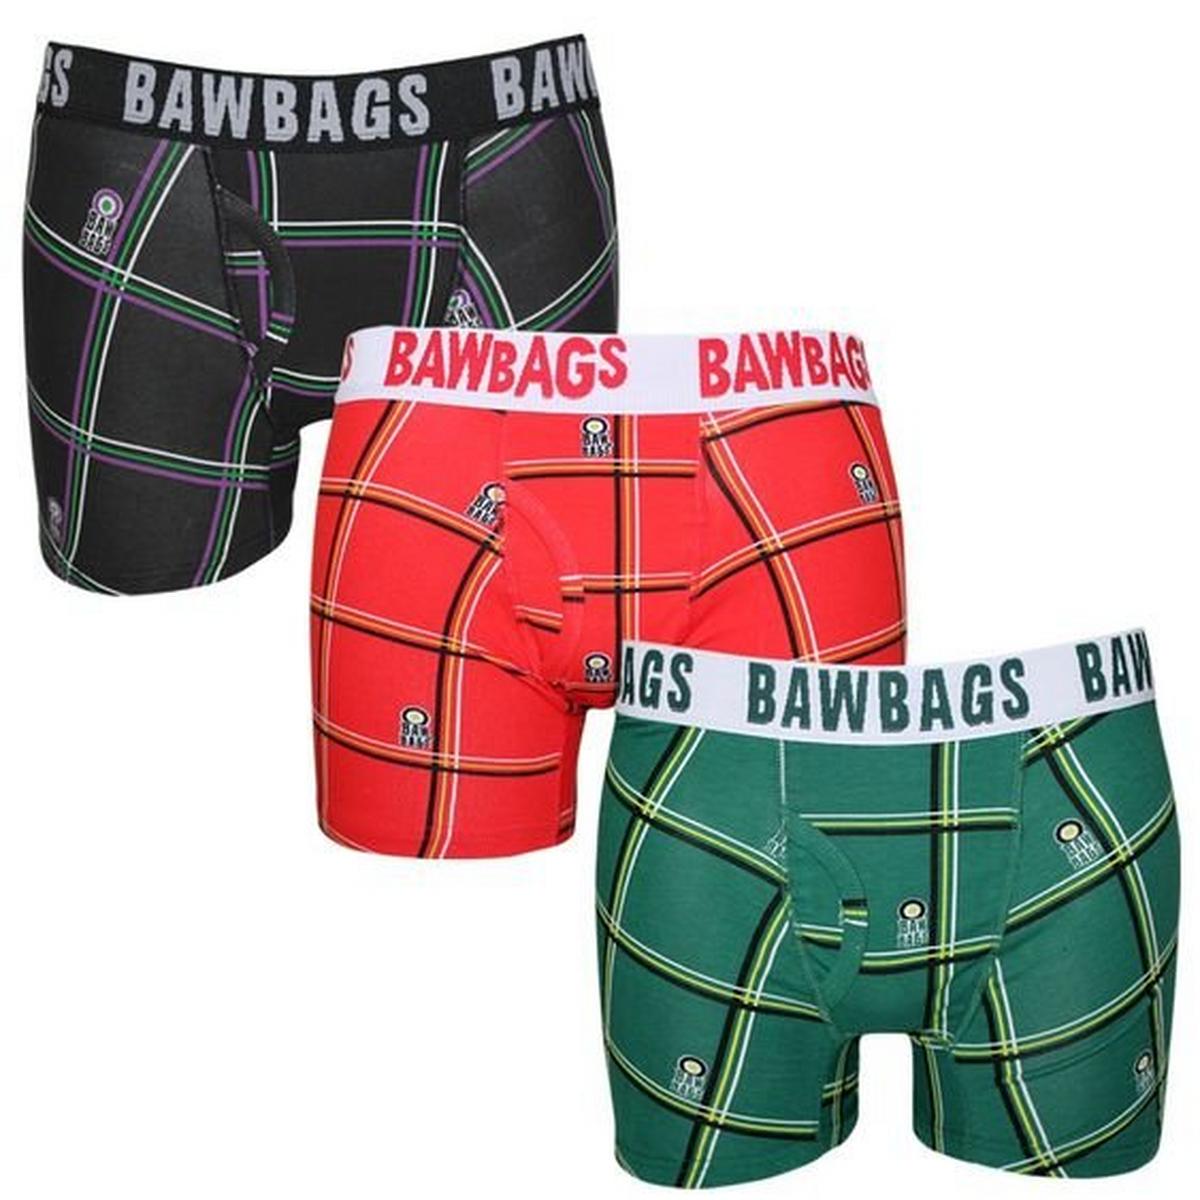 Bawbags Men's Cotton Boxers 3 Pack Tartan